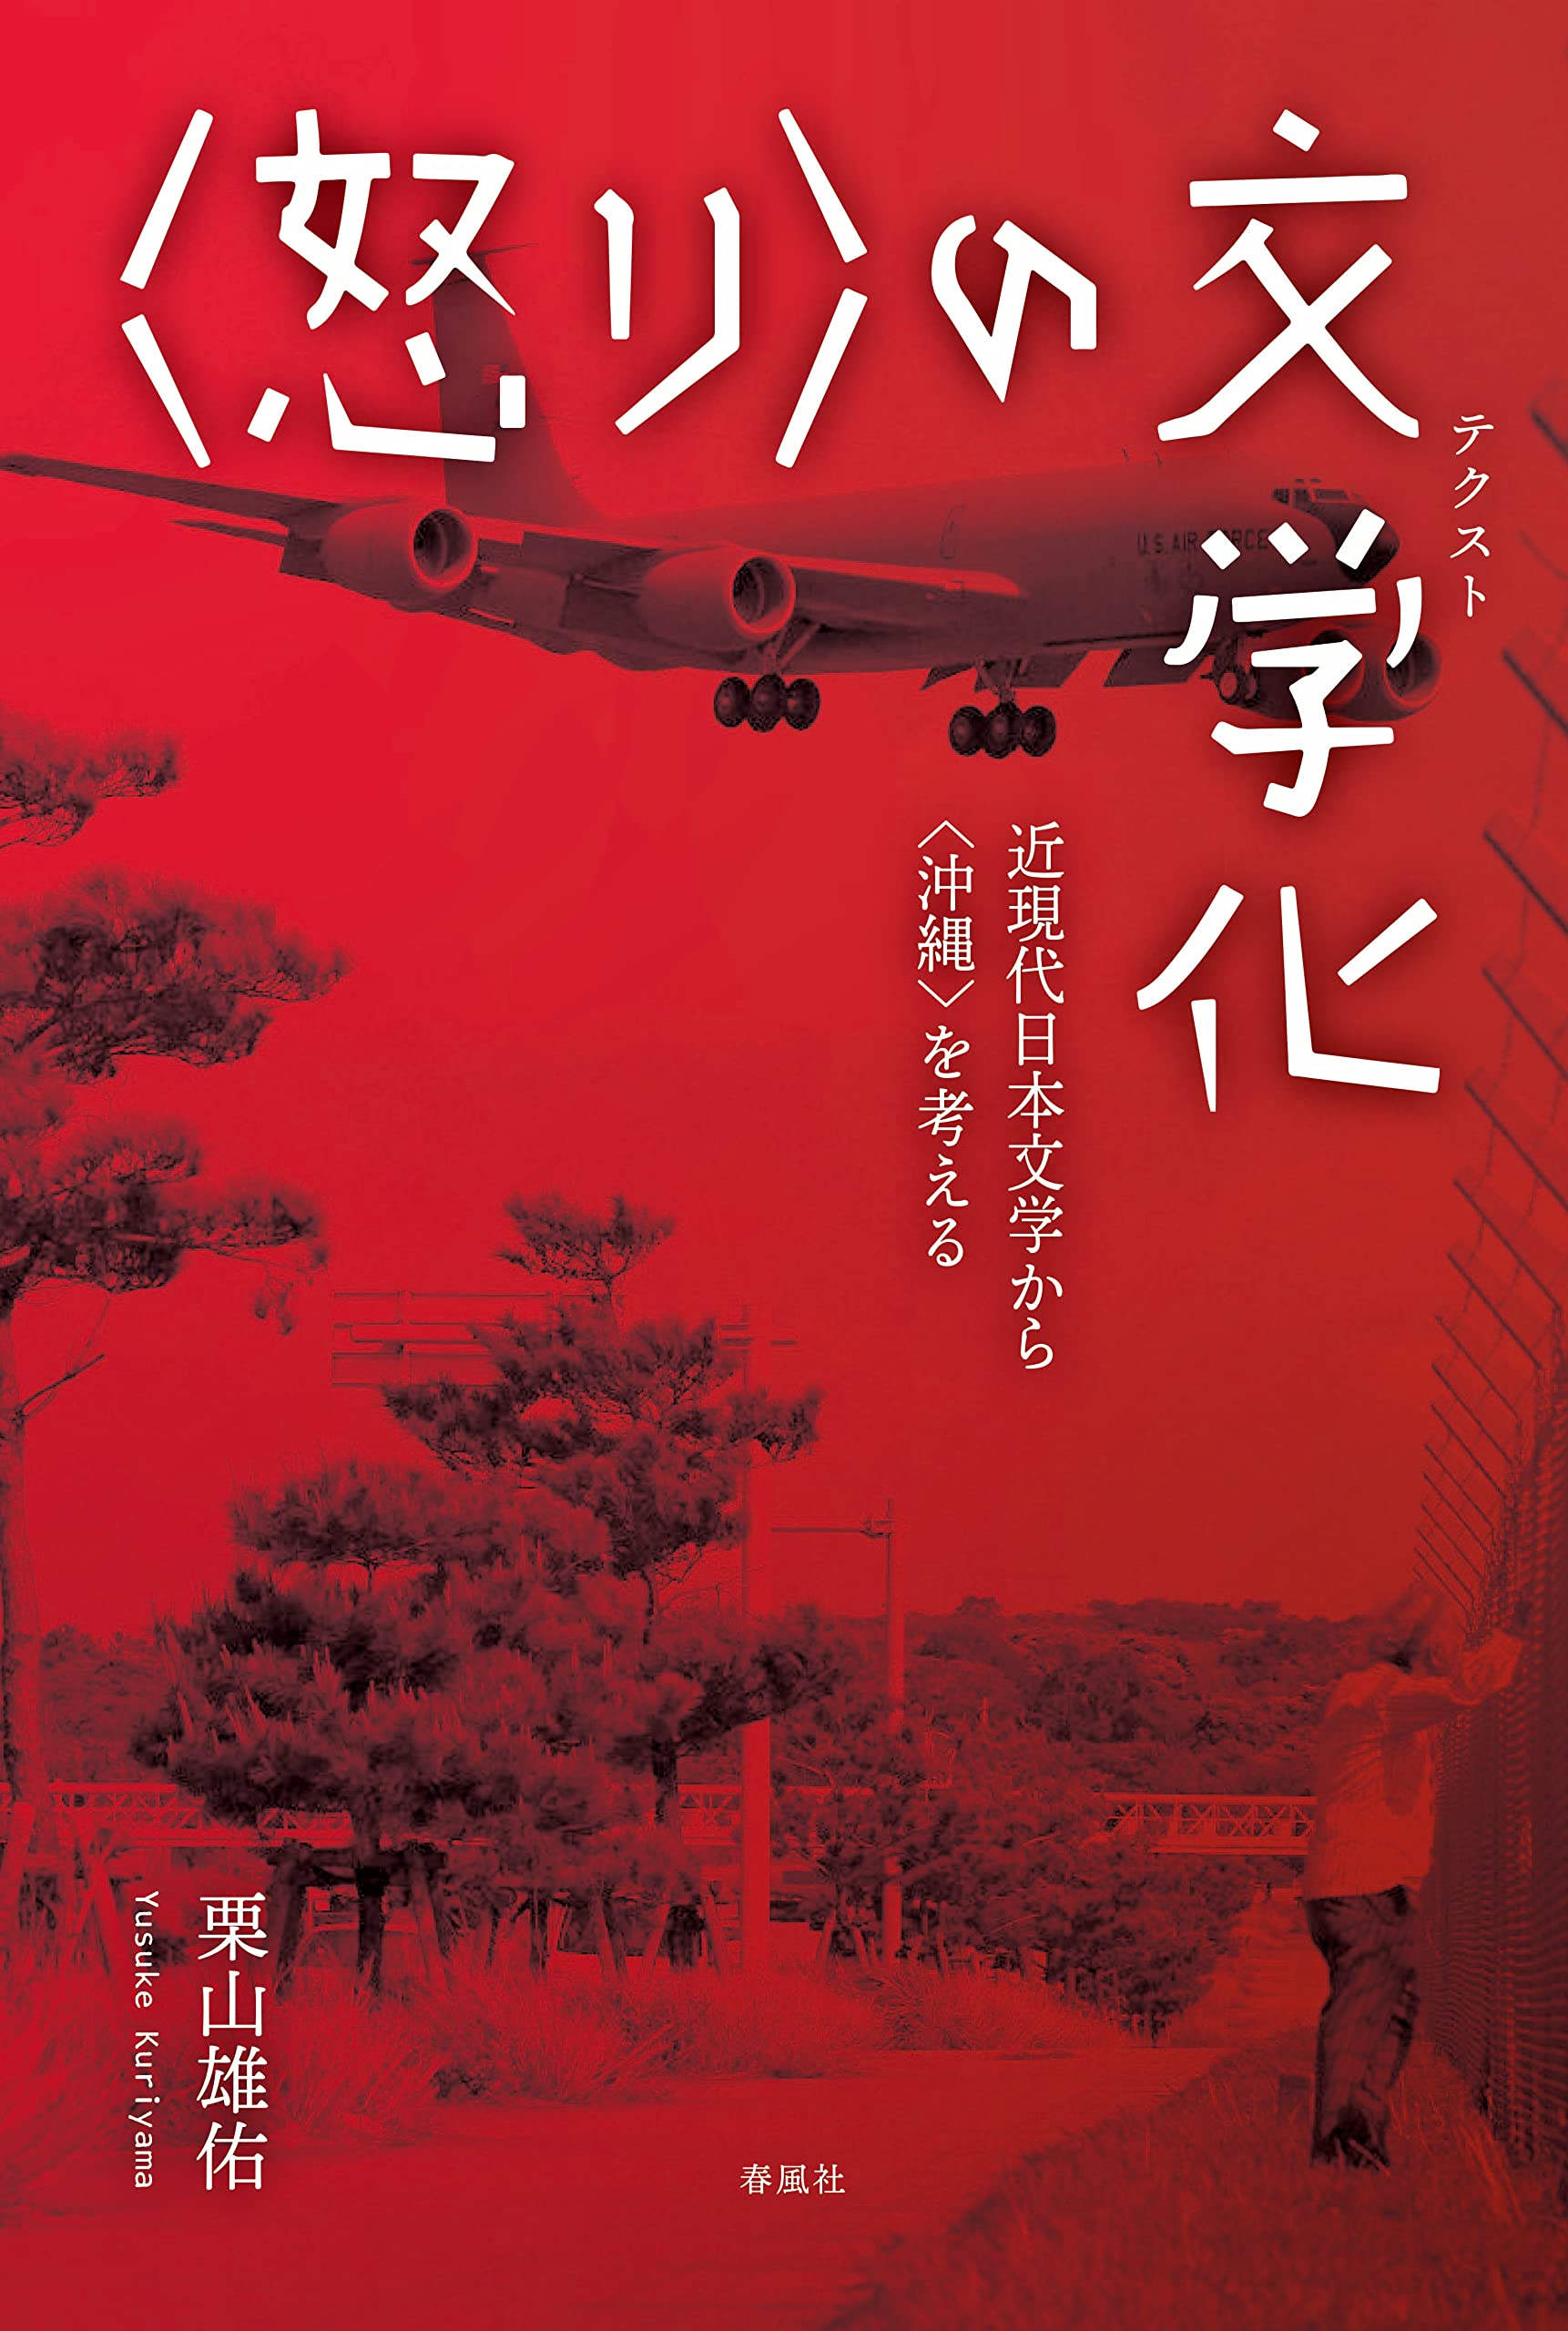 〈怒り〉の文學化――近現代日本文學から〈沖繩〉を考える